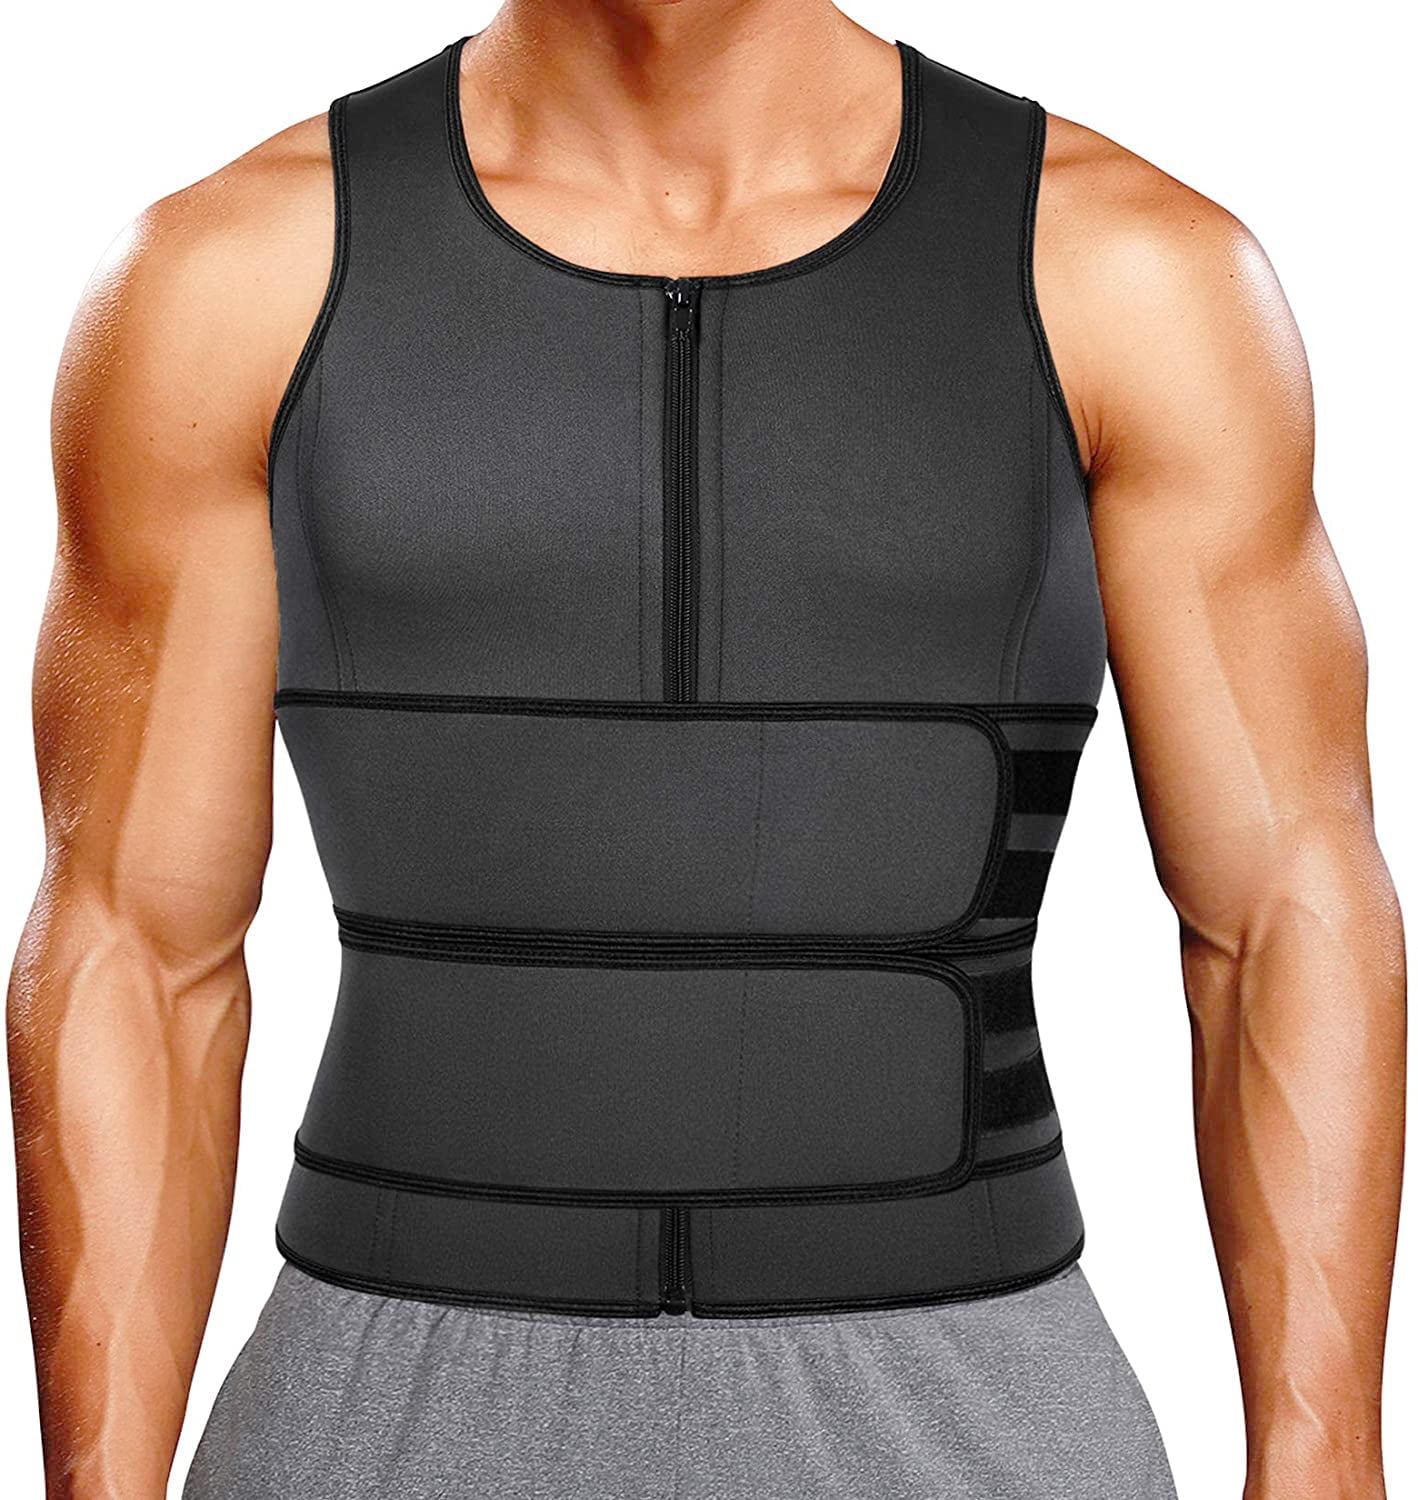 Sweat Neoprene Sauna Suit Gym Tank Top Vest with Adjustable Shaper Waist Trainer 